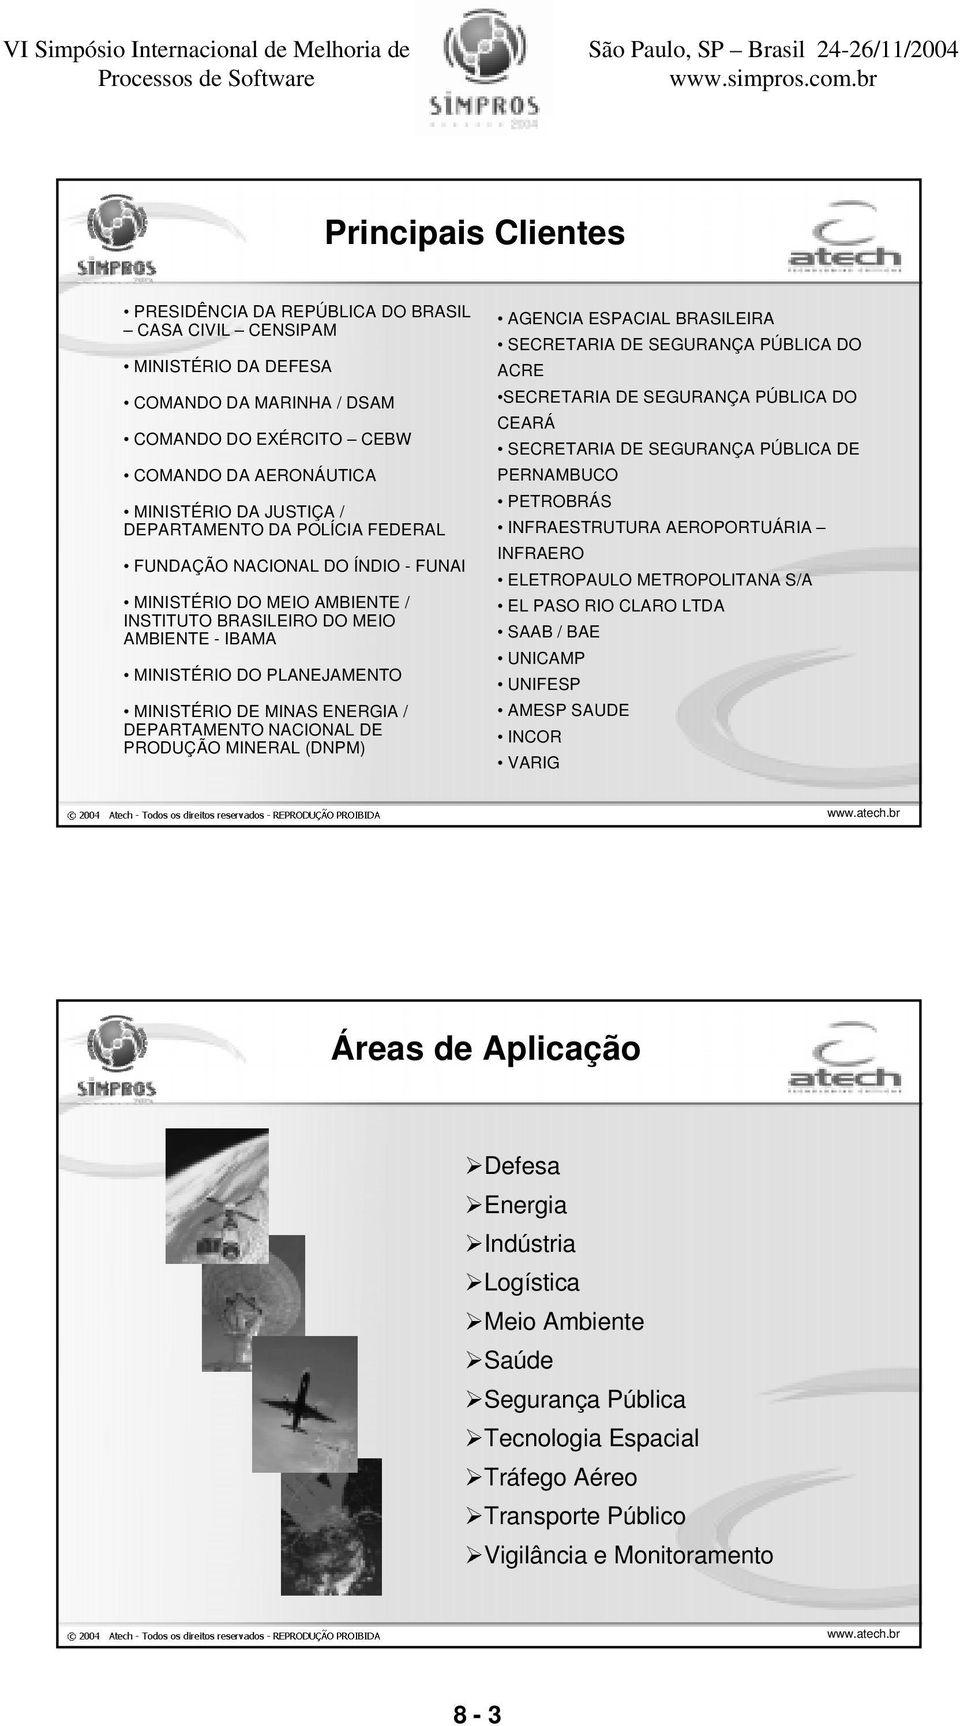 DEPARTAMENTO NACIONAL DE PRODUÇÃO MINERAL (DNPM) AGENCIA ESPACIAL BRASILEIRA SECRETARIA DE SEGURANÇA PÚBLICA DO ACRE SECRETARIA DE SEGURANÇA PÚBLICA DO CEARÁ SECRETARIA DE SEGURANÇA PÚBLICA DE